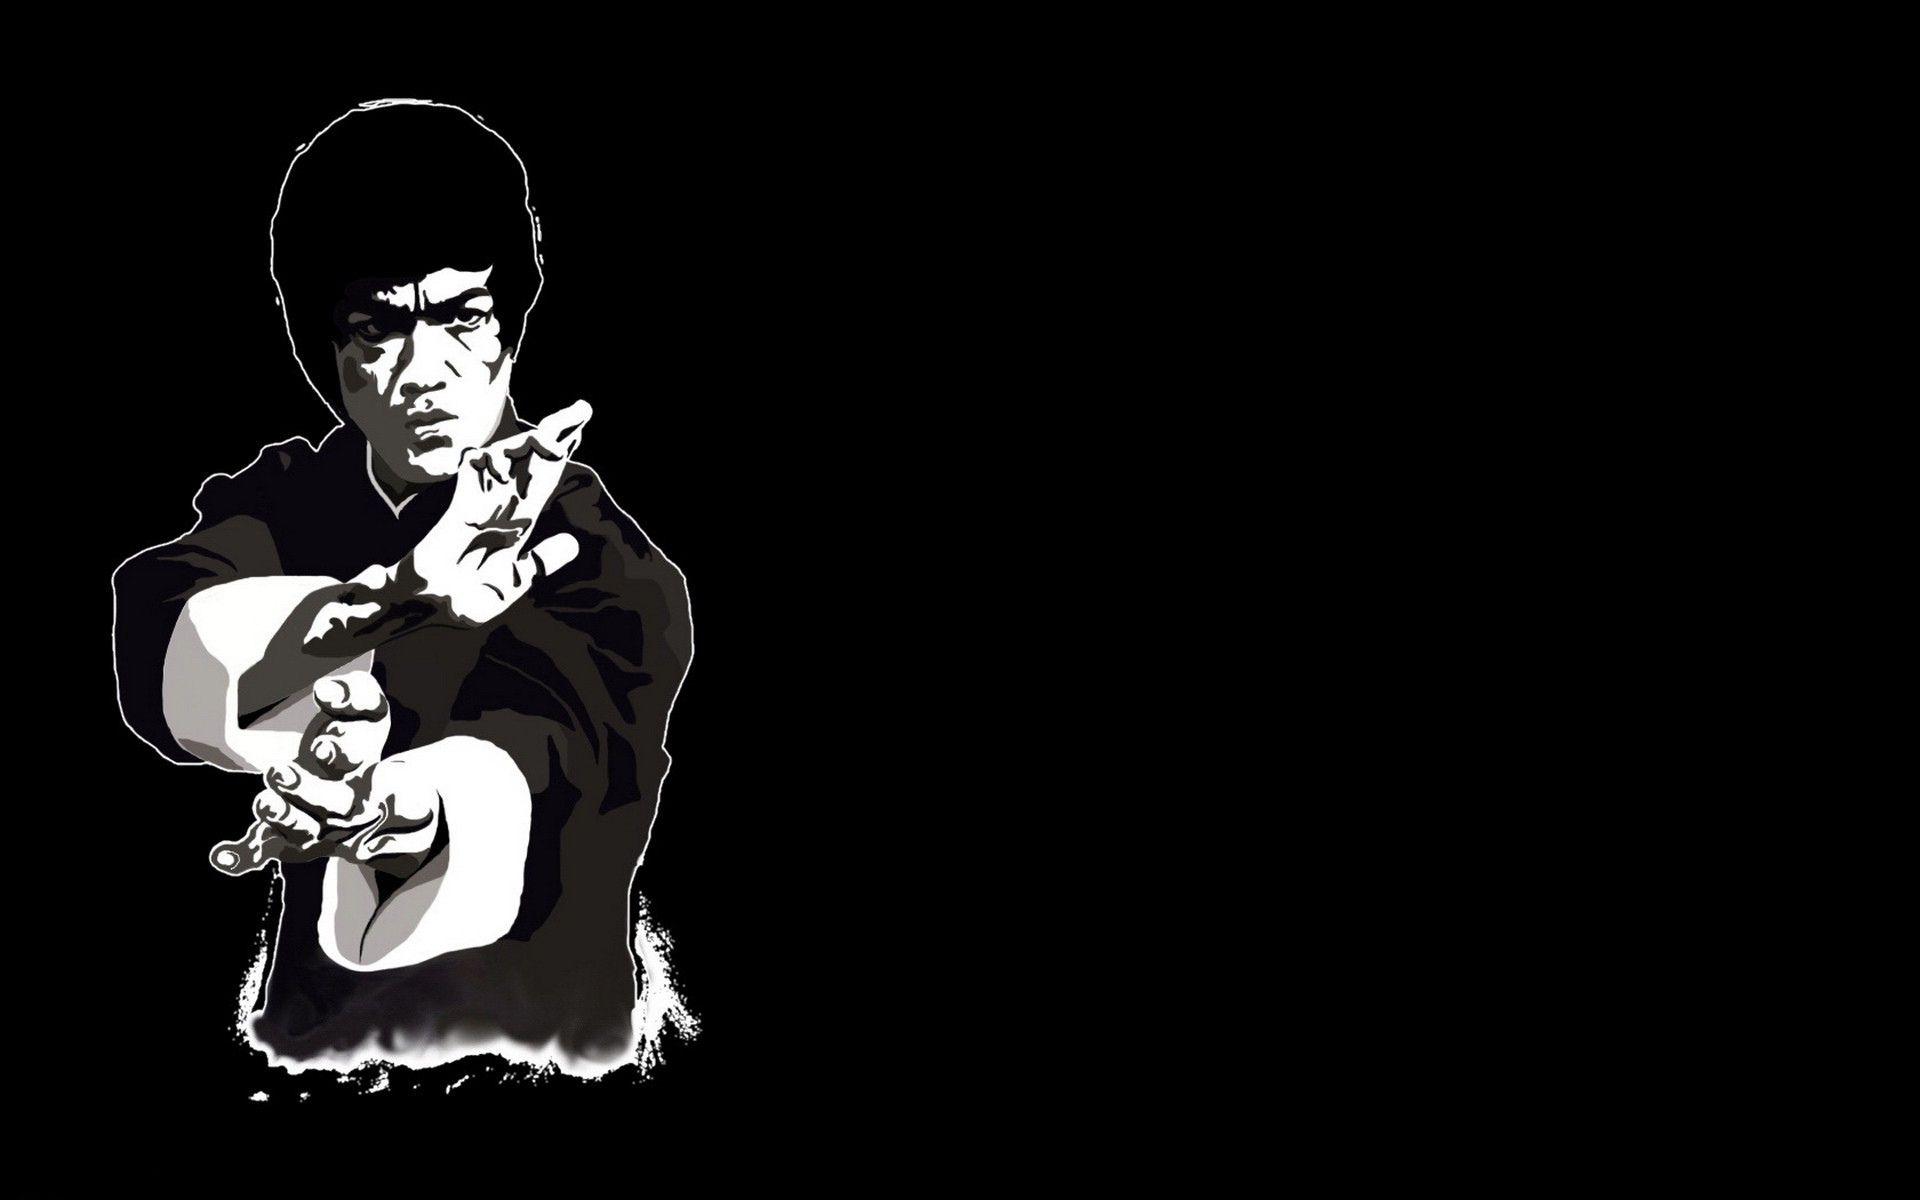 Bruce Lee Wallpaper HD